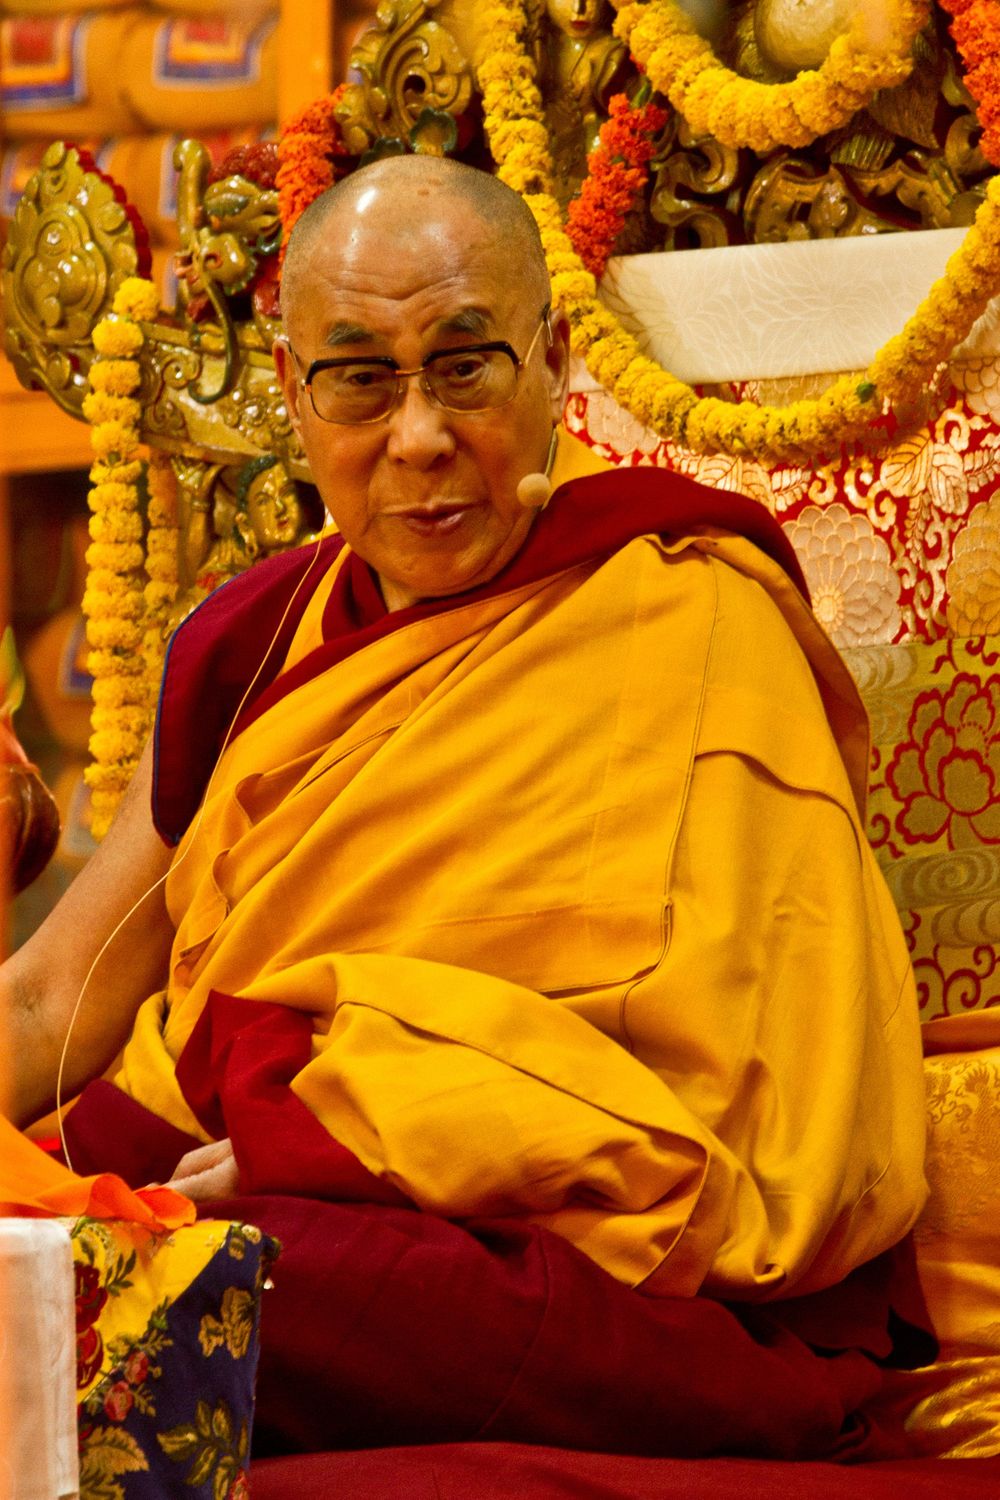 Dalai Lama on the Value of Compassion